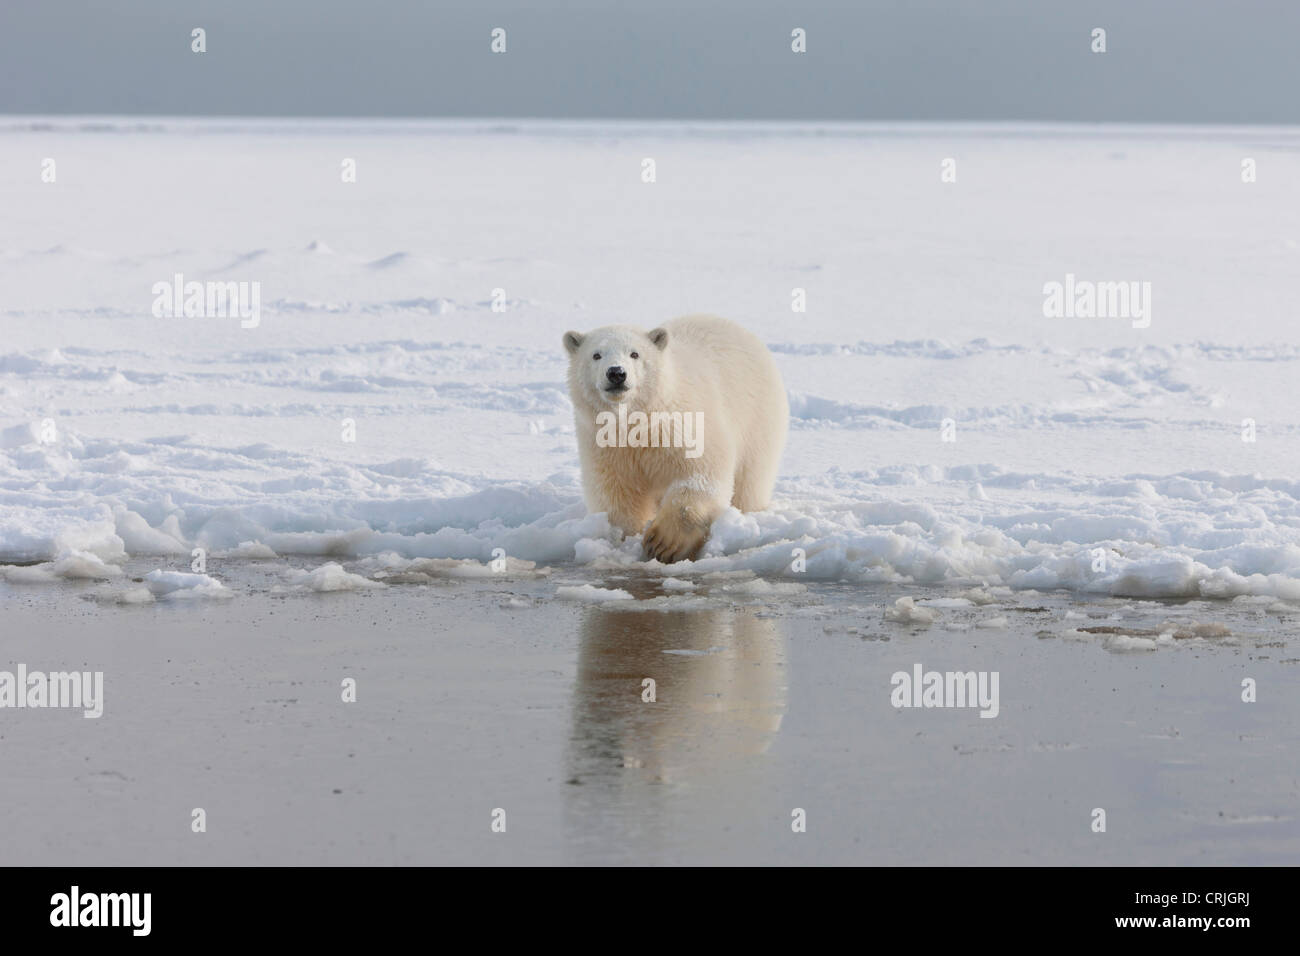 Un curieux jeune ours polaire joue dans la neige sur le bord de la glace de mer de Beaufort, dans la réserve faunique nationale, le nord de l'Alaska. Banque D'Images